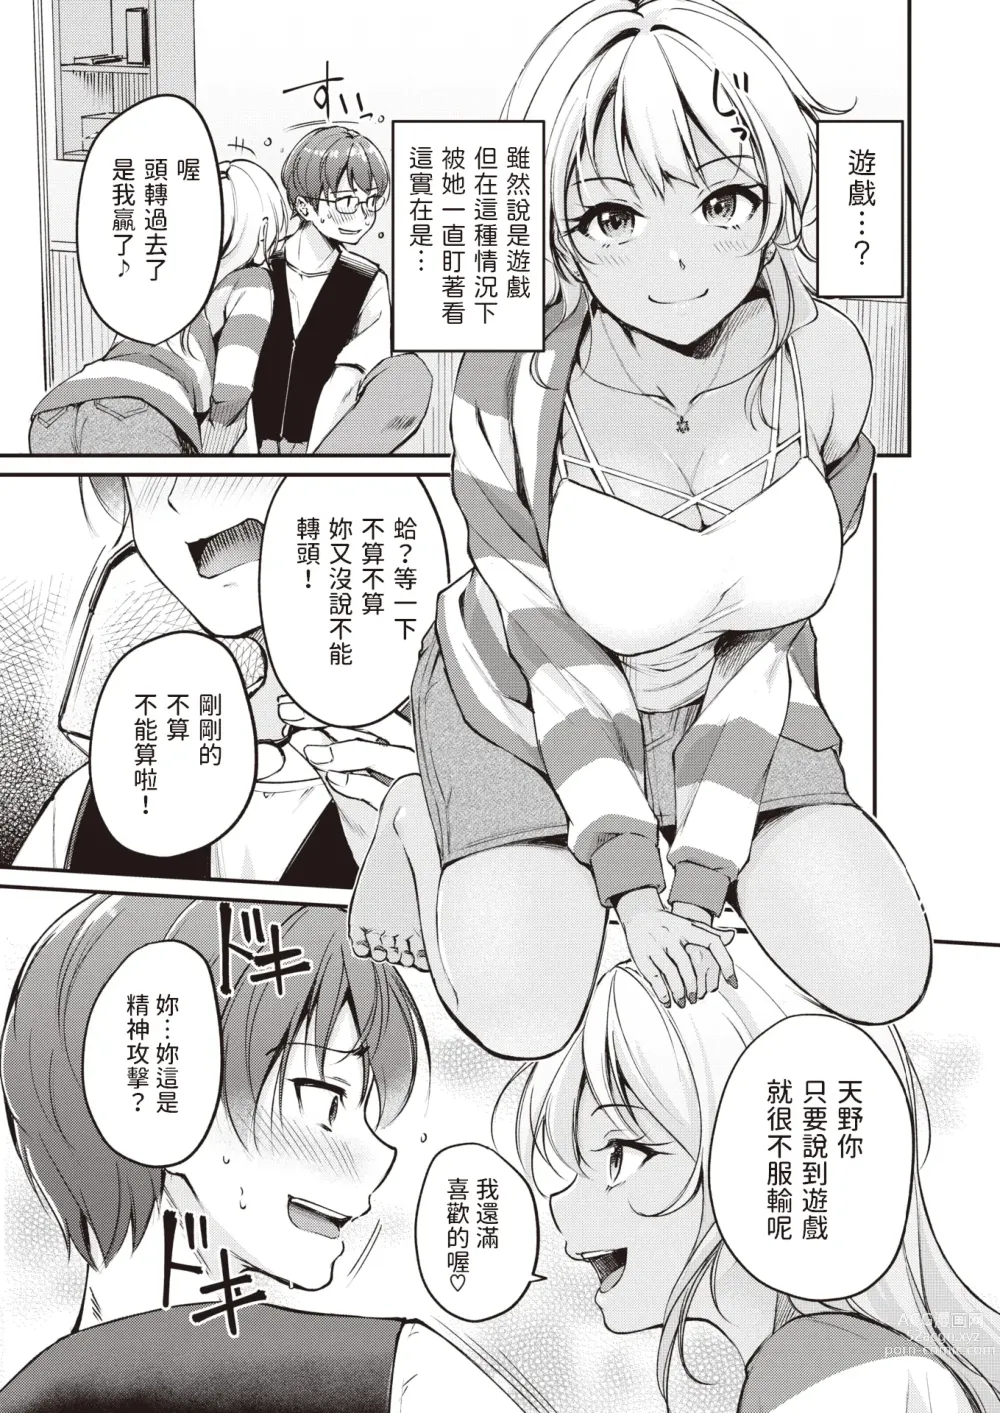 Page 9 of manga Tsumetai Kimi to Atsui Game o